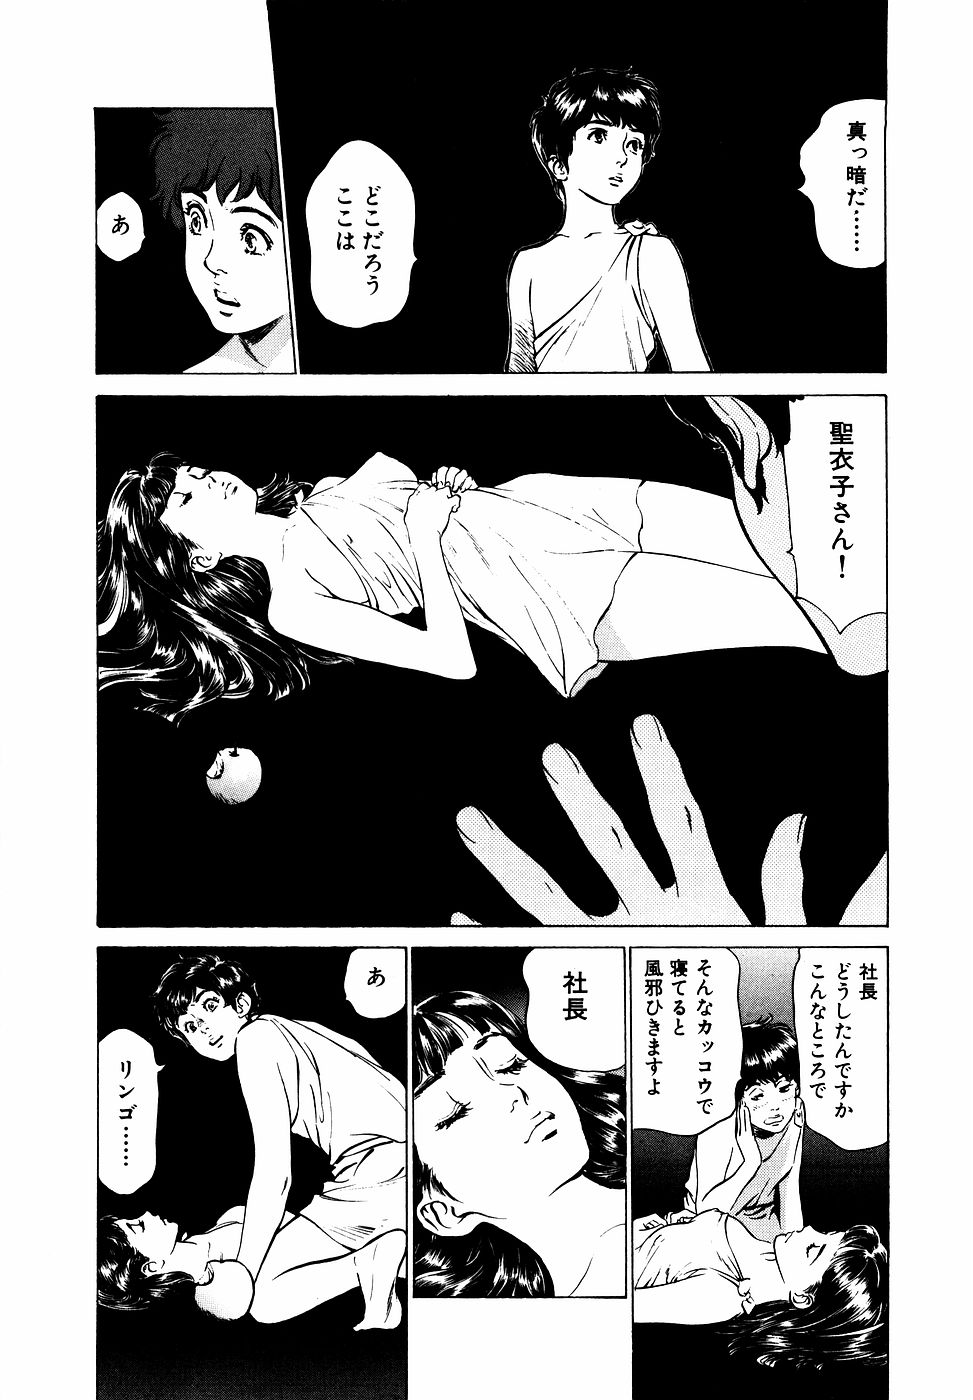 [Kaoru Hazuki] Antique Romantic Vol.2 Otakara Kaen Pen [八月薫] アンチックロマンチック Vol.2 お宝花園編